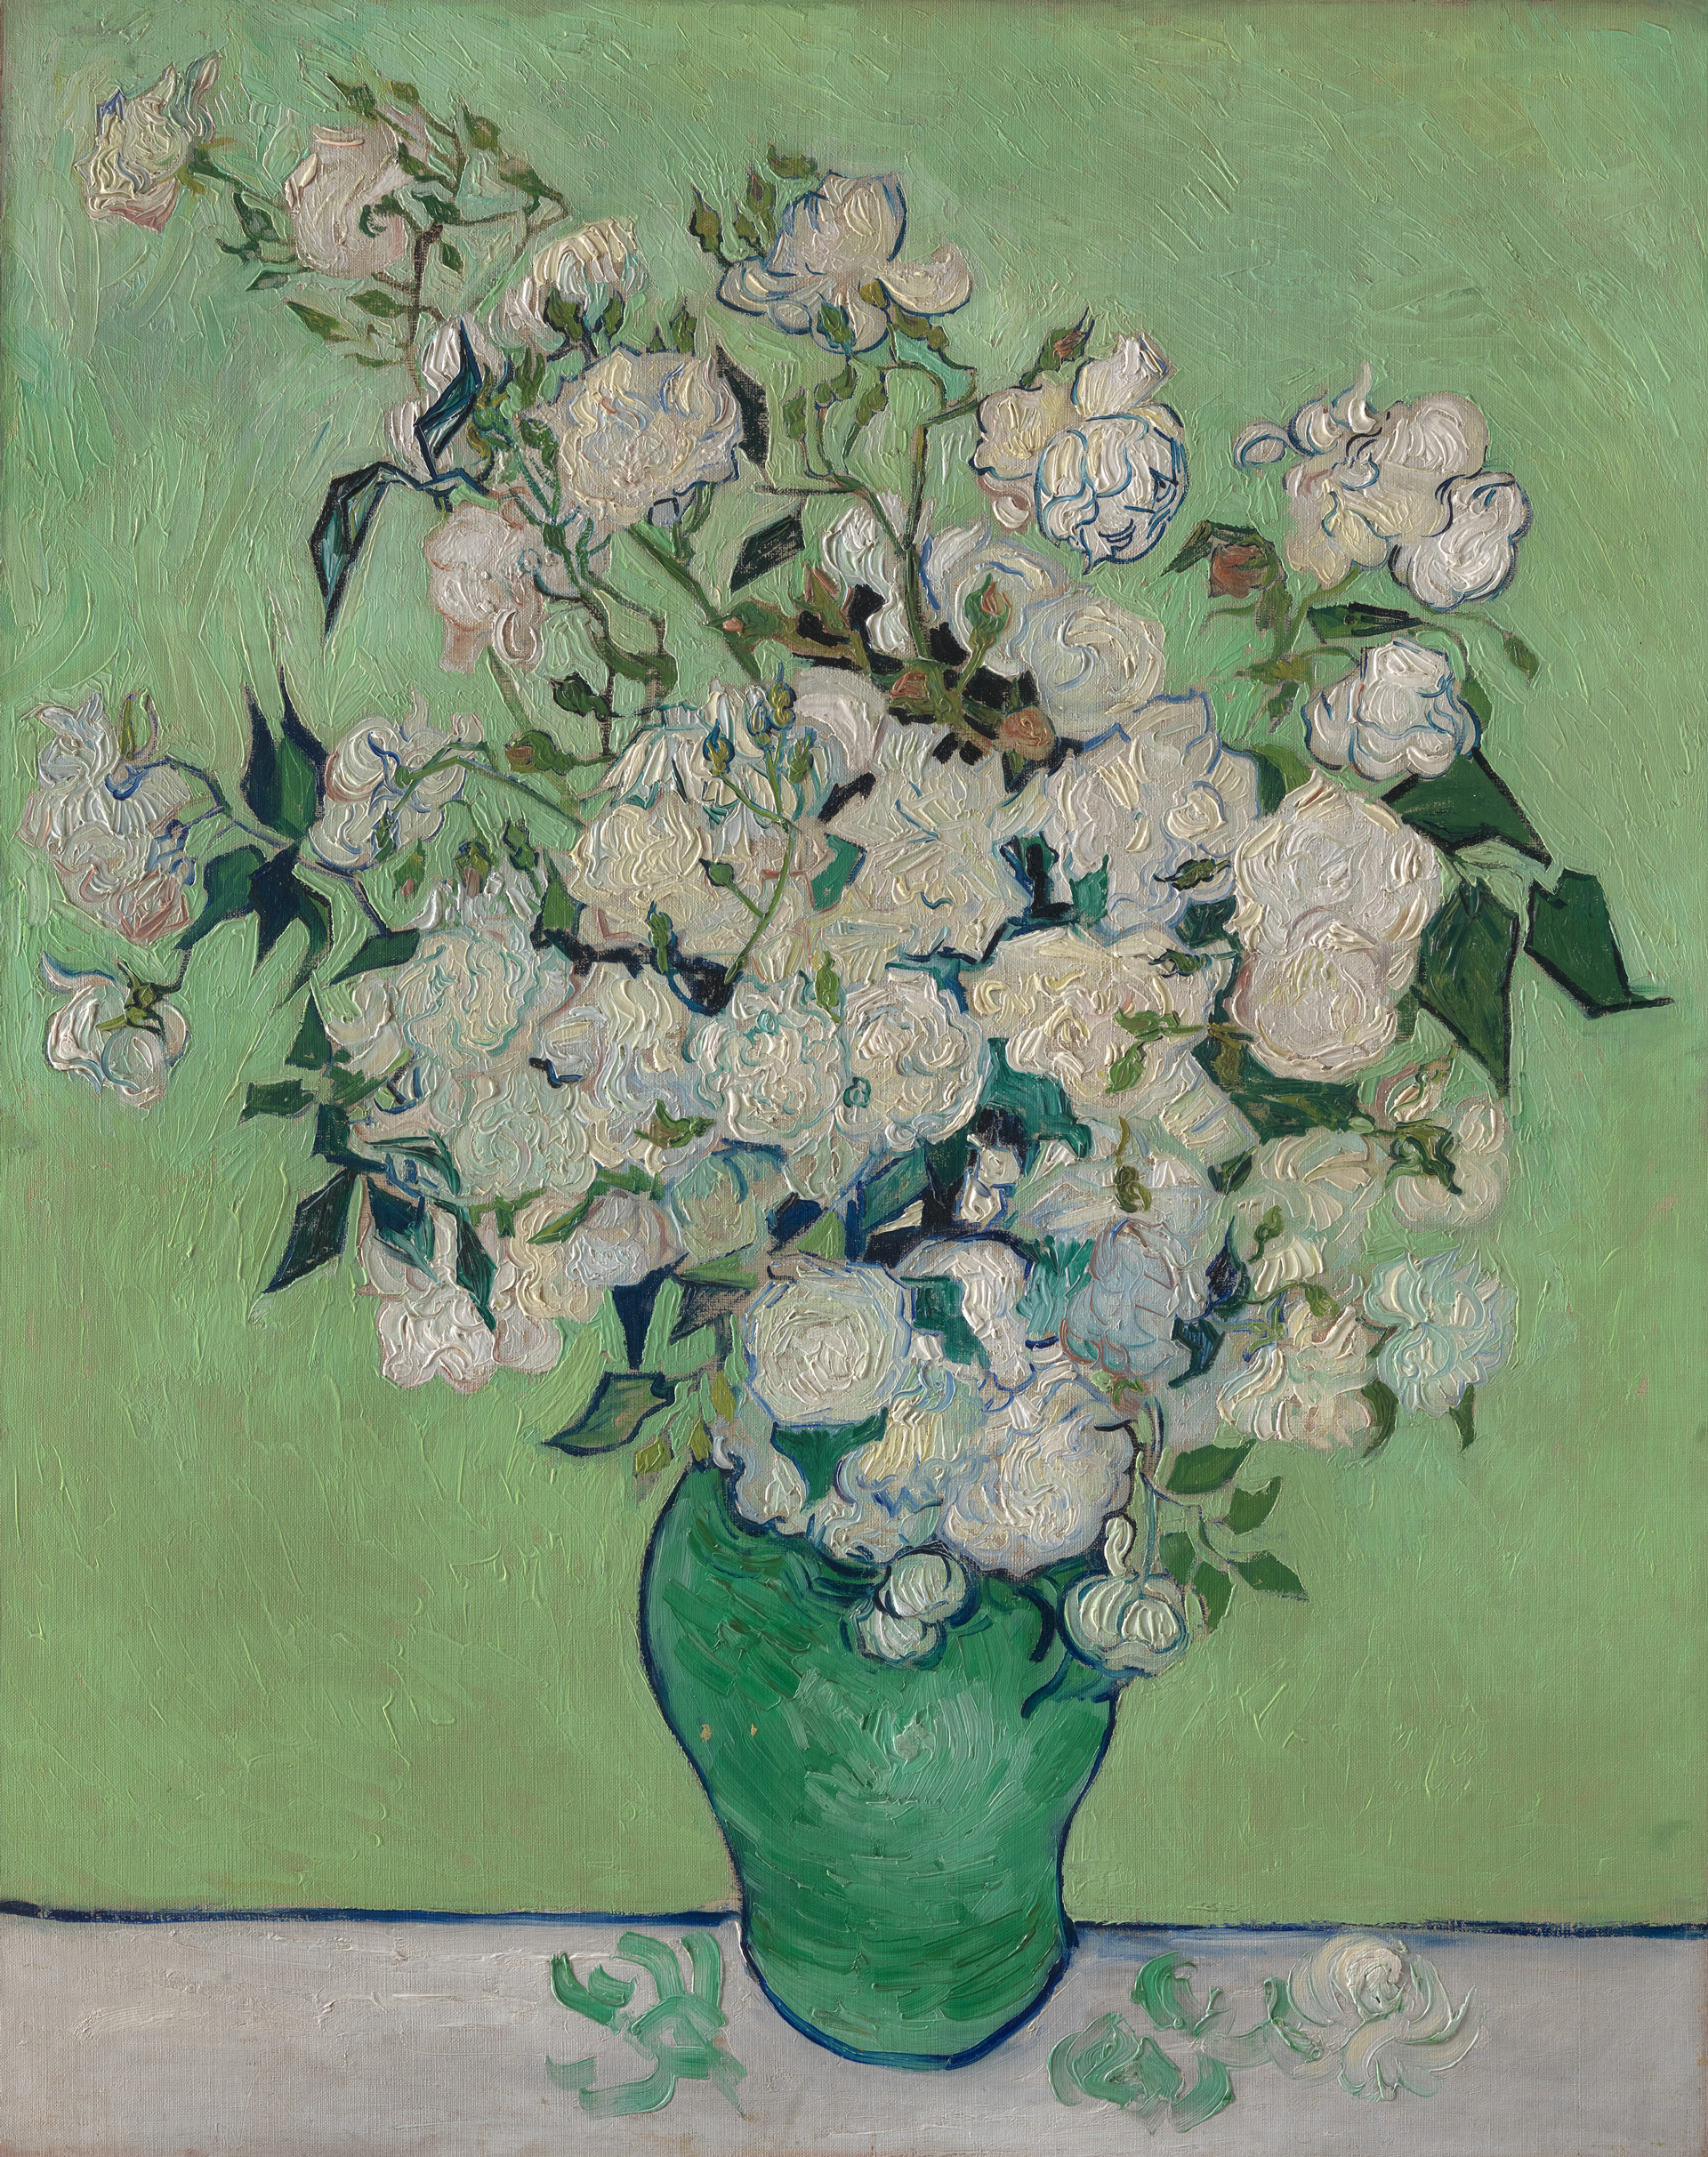 Gemälde eines Blumenstraußes in einer grünen Vase vor grüner Wand